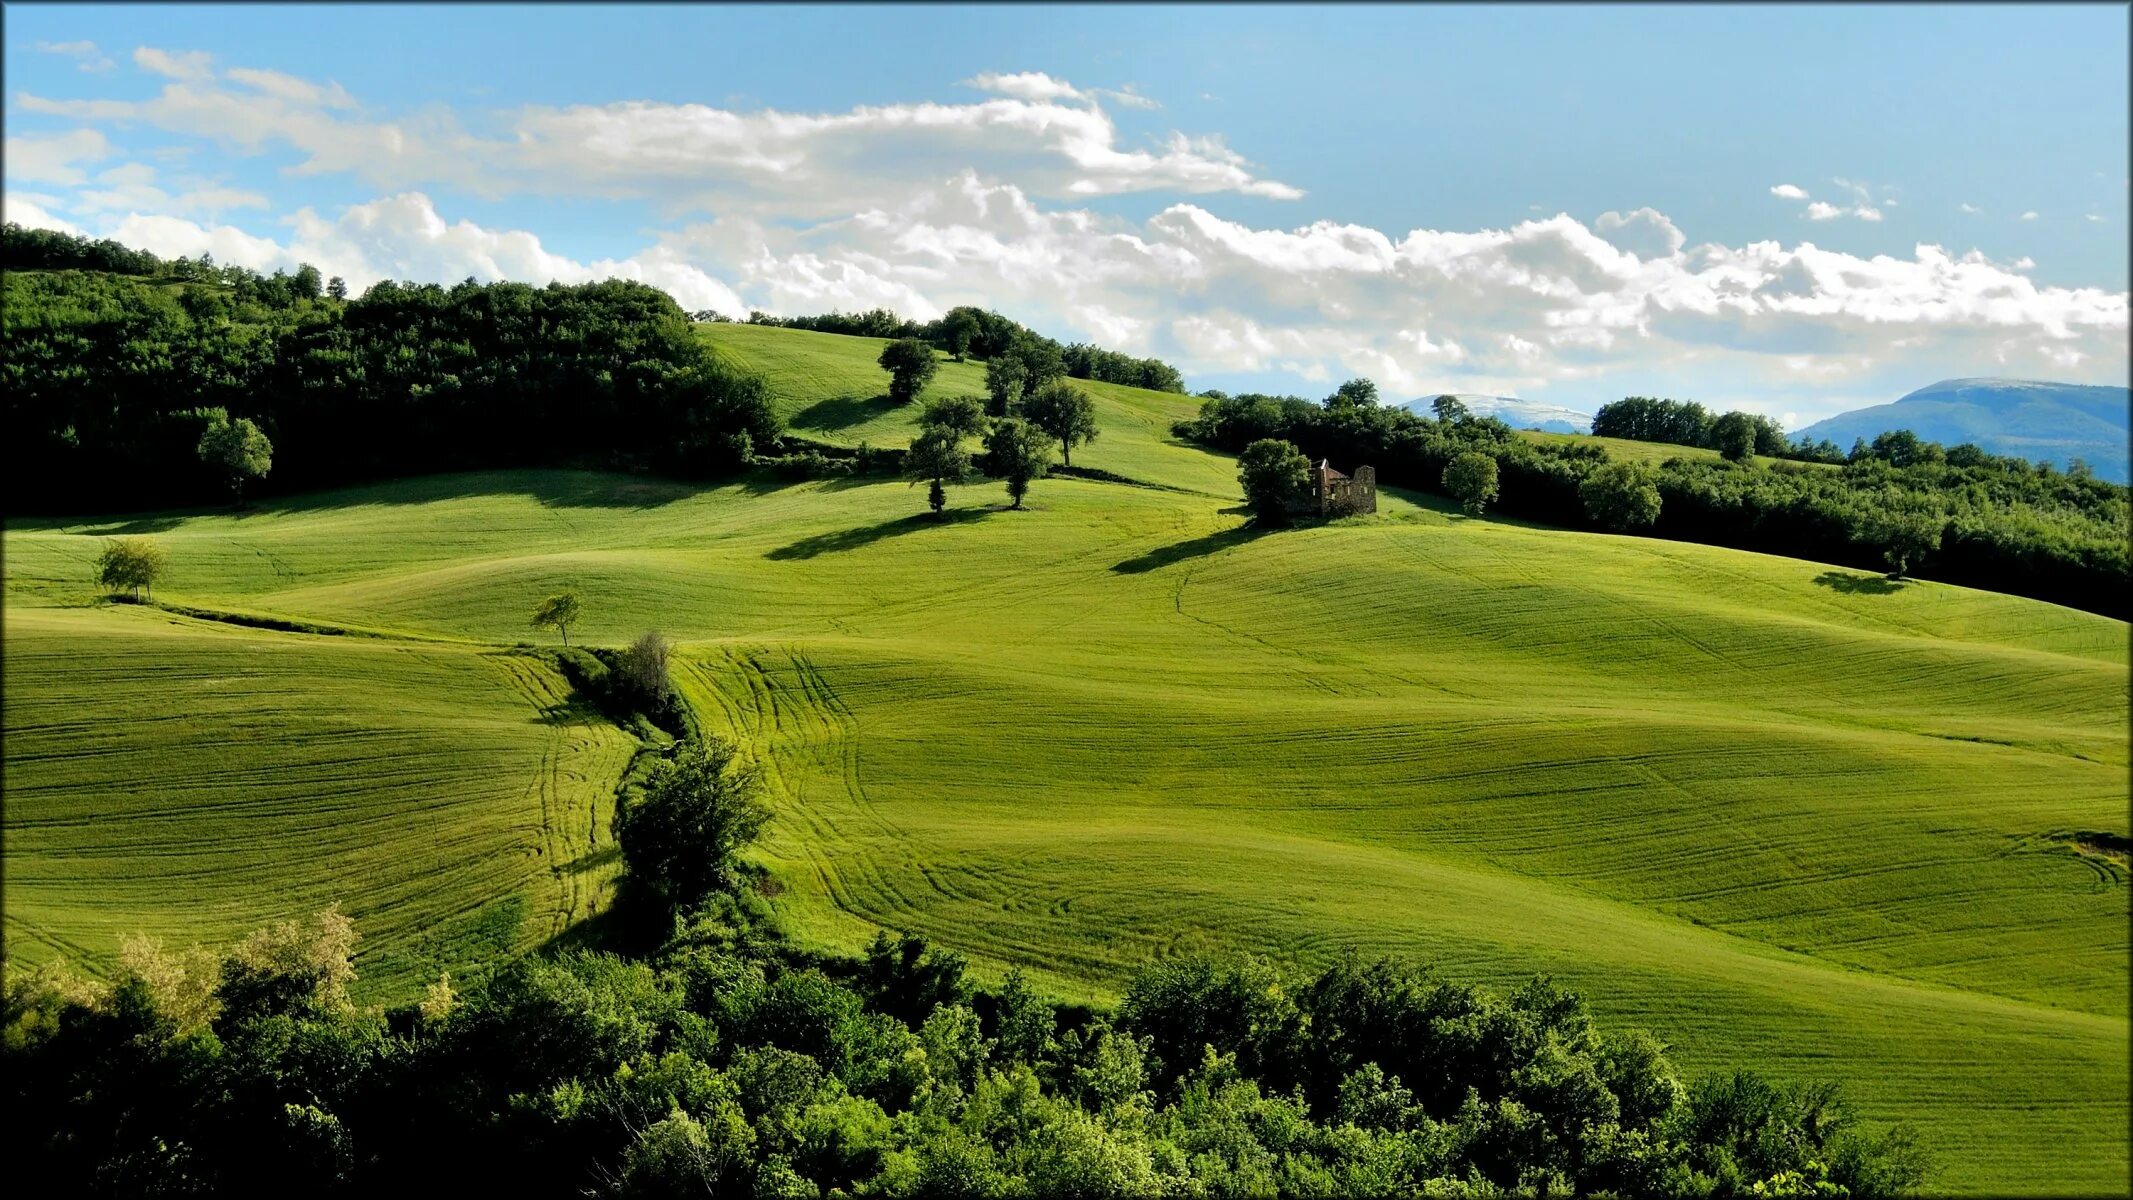 Горизонтальный холм. Паданская равнина Италия. Штирийско-бургенландская Холмистая равнина. Green Hills зеленые холмы.